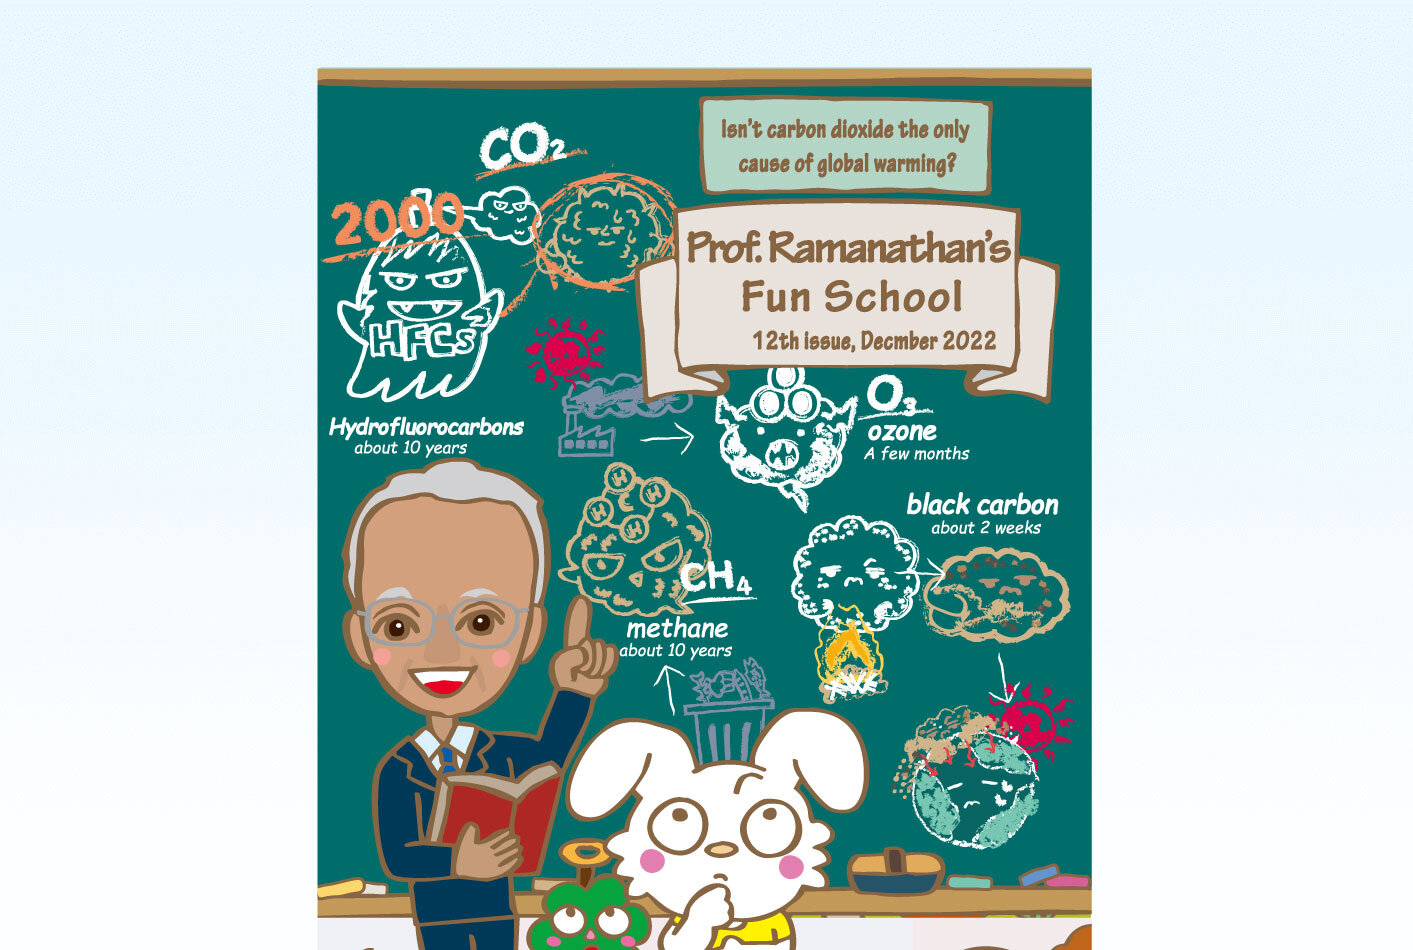 
Prof. Ramanathan's Fun School